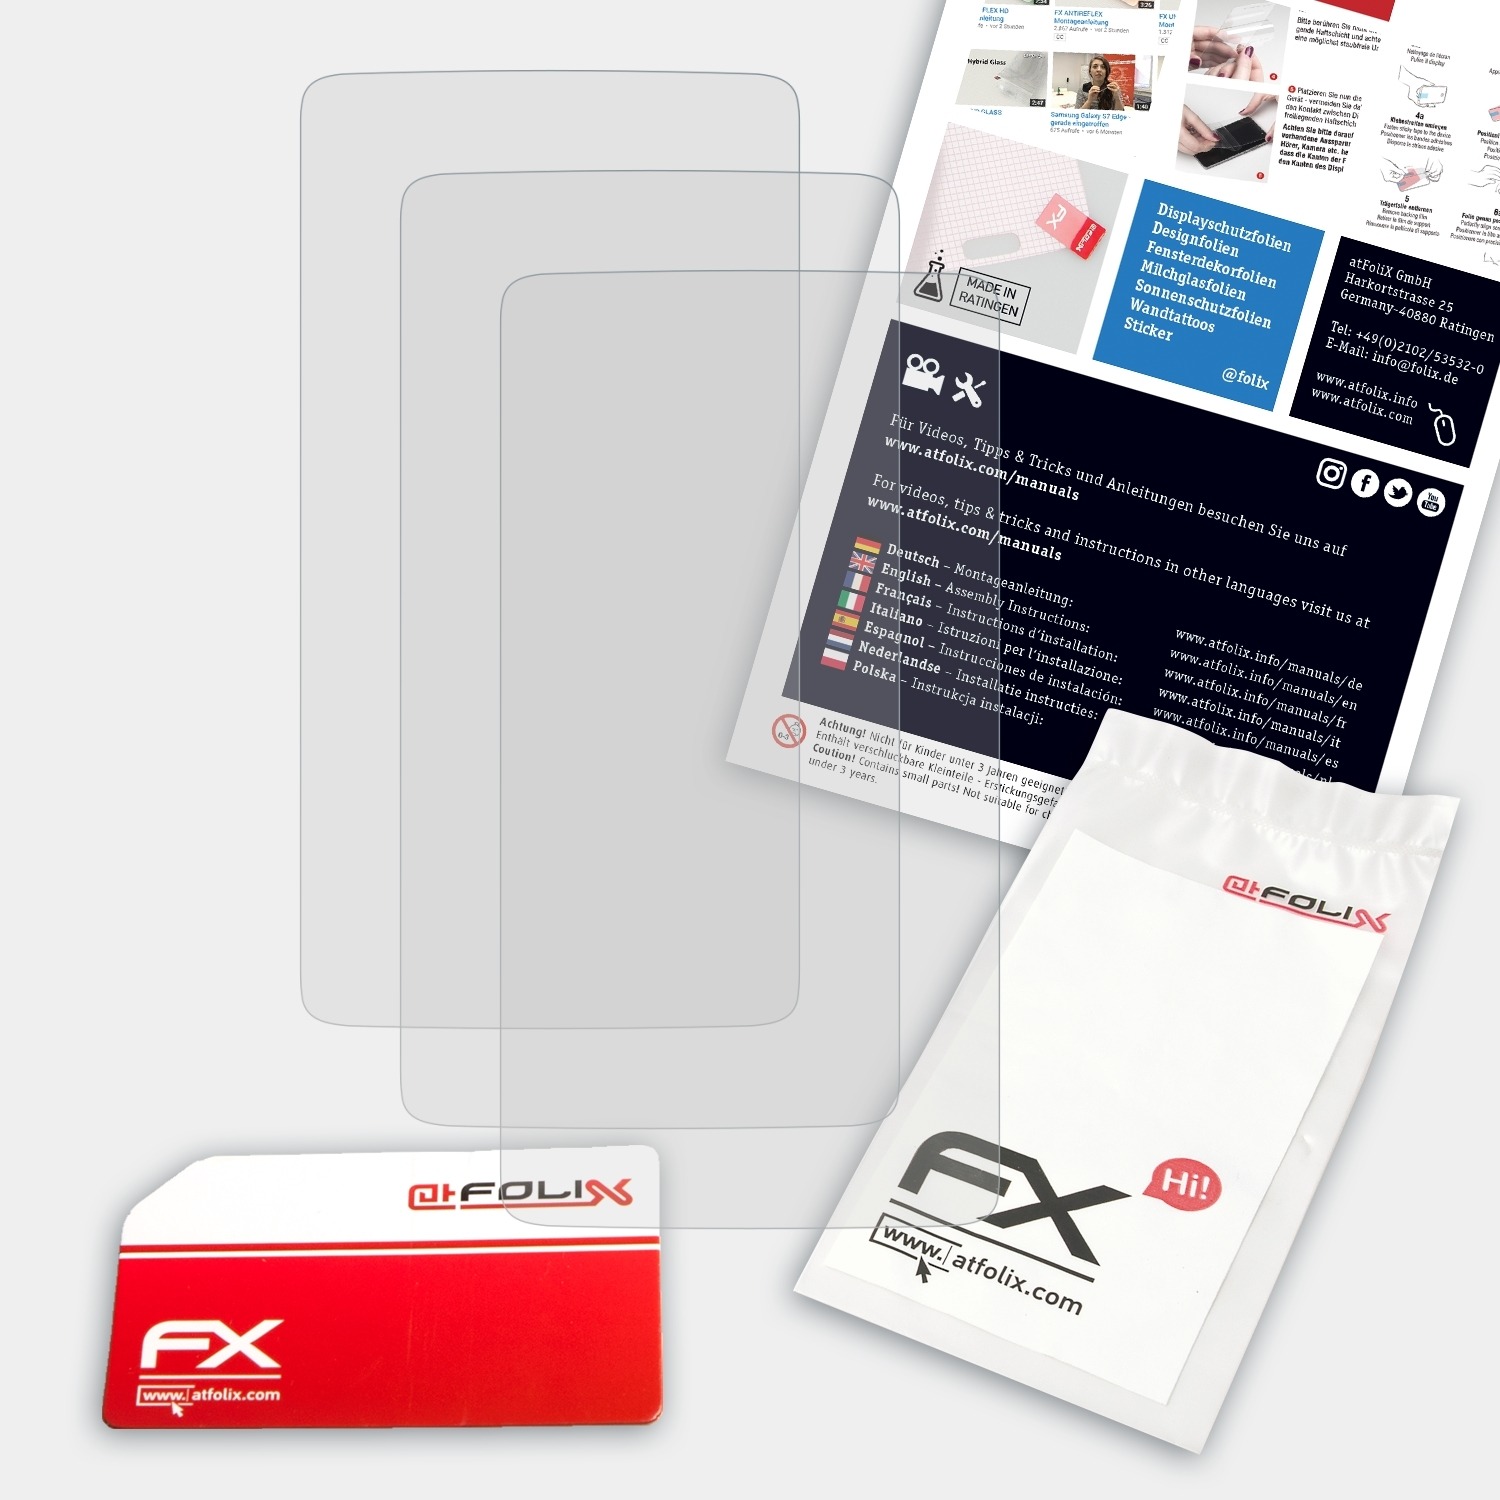 ATFOLIX 3x FX-Antireflex Displayschutz(für Liquid Acer Z200)